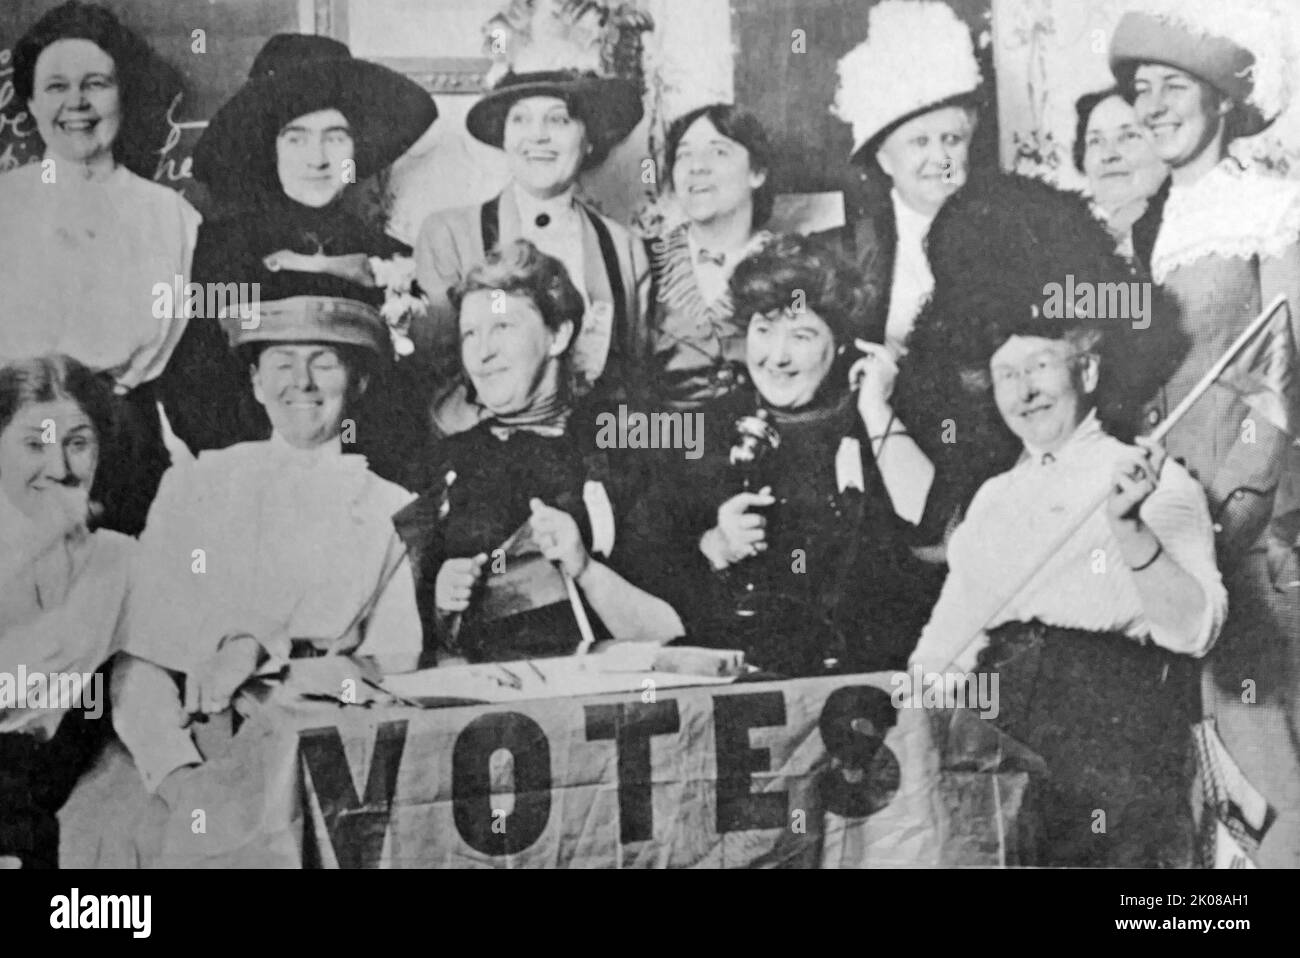 Frauen sufragettes, die für Stimmen werben. Eine Frauenrechtlerin war Anfang des 20.. Jahrhunderts Mitglied einer aktivistischen Frauenorganisation, die unter dem Banner "Votes for Women" für das Wahlrecht bei öffentlichen Wahlen im Vereinigten Königreich kämpfte Stockfoto